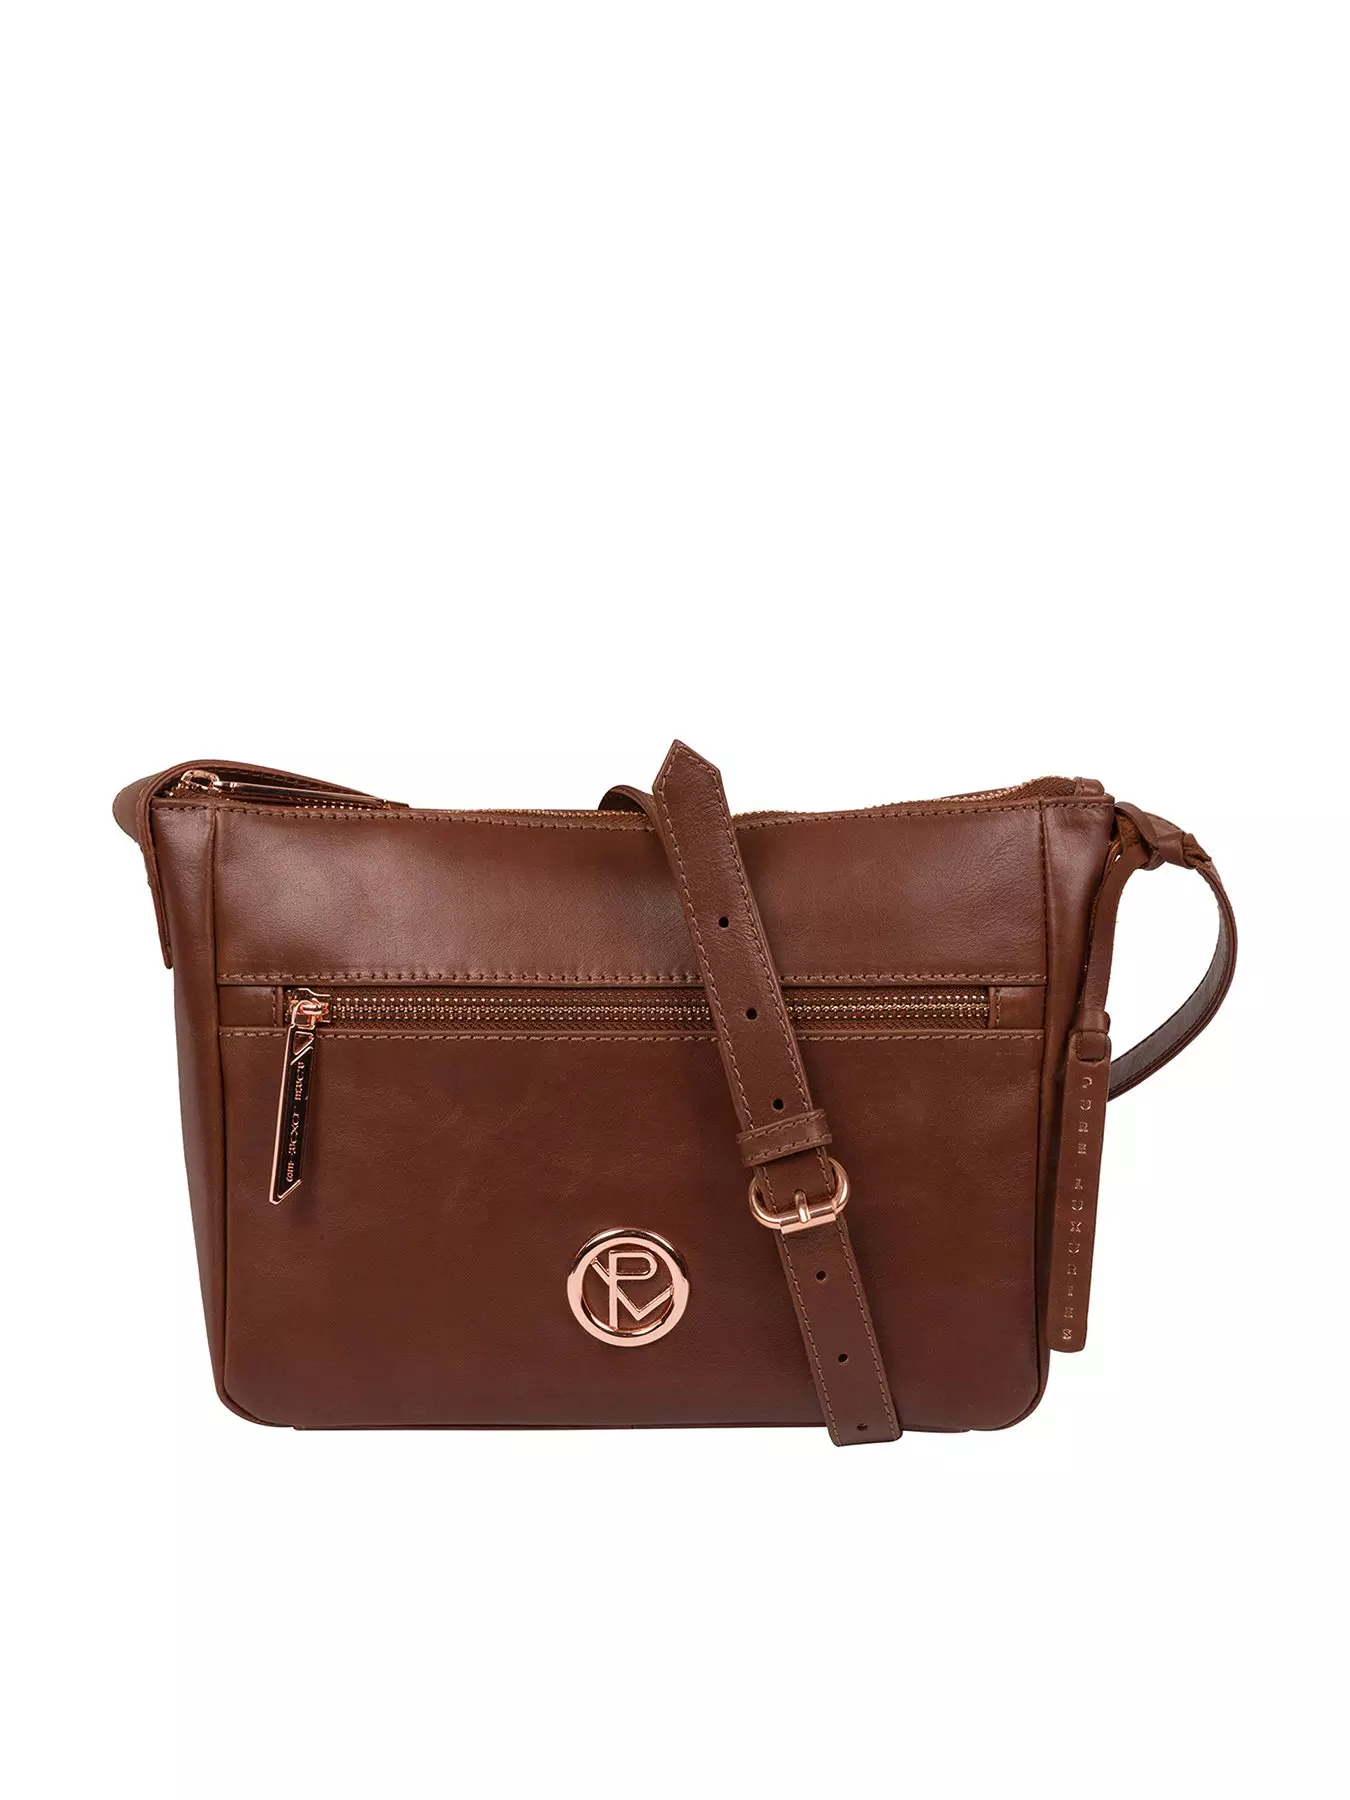 ASHWOOD Lovely Woman's Shoulder Bag Genuine Leather Chestnut Brown  Color Sz Med